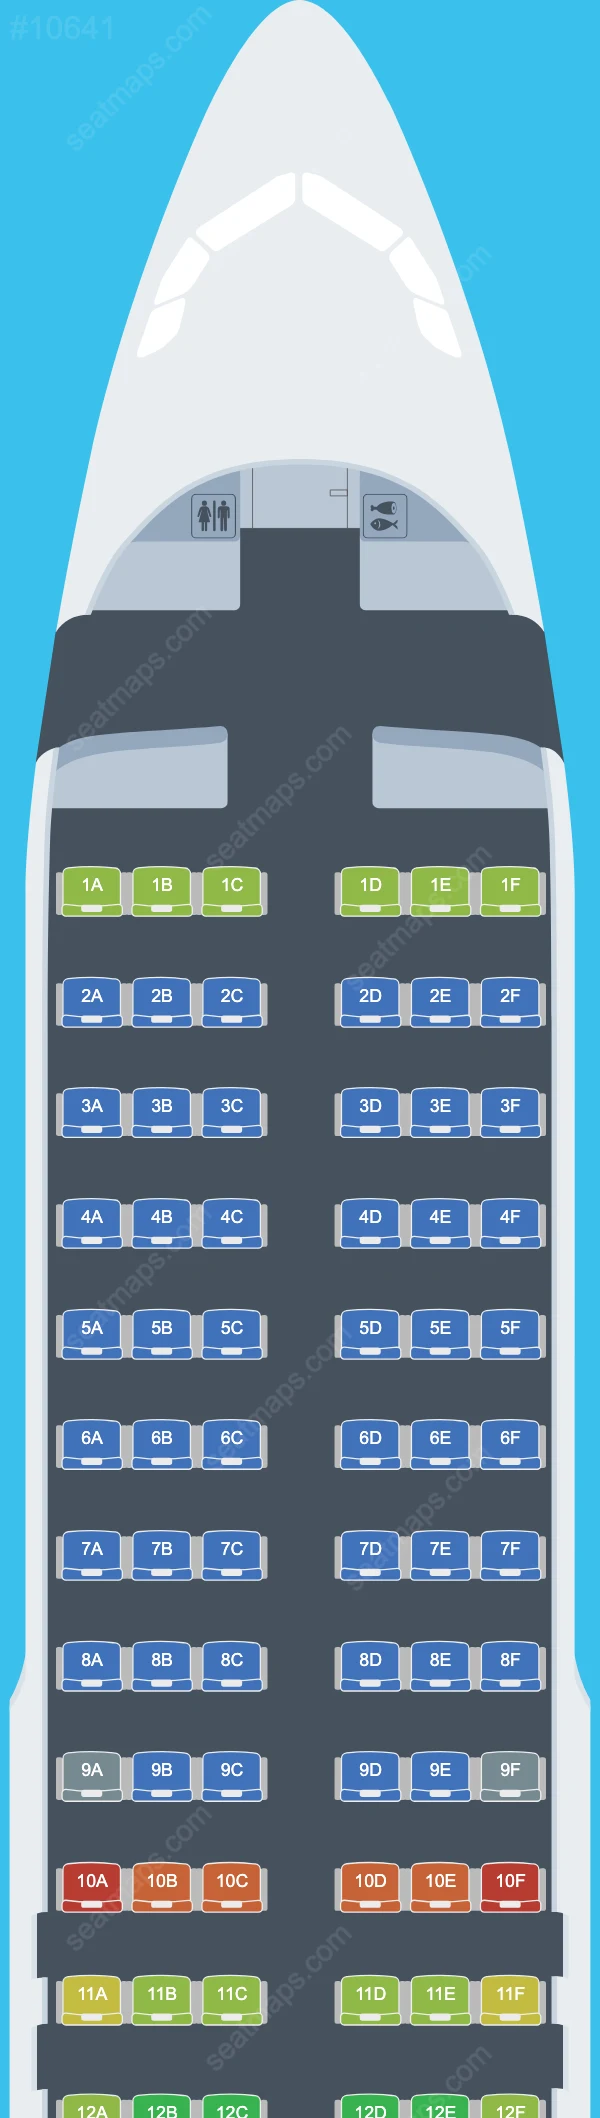 ITA Airways Airbus A320 Seat Maps A320-200 V.1